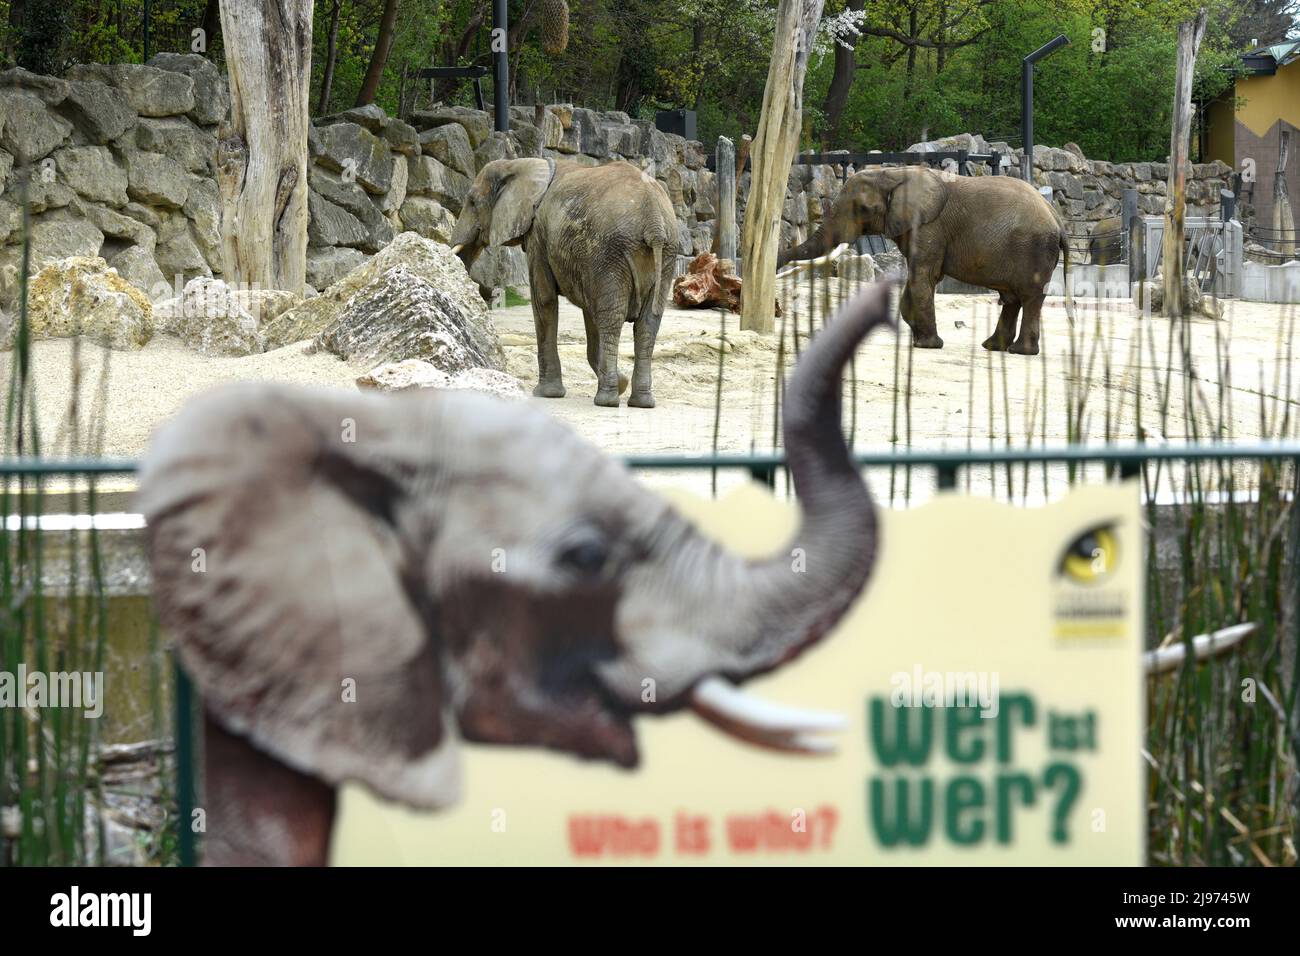 Elefant im Zoo Schönbrunn in Wien, Österreich, Europa - Elephant in Schönbrunn Zoo in Vienna, Austria, Europe Stock Photo